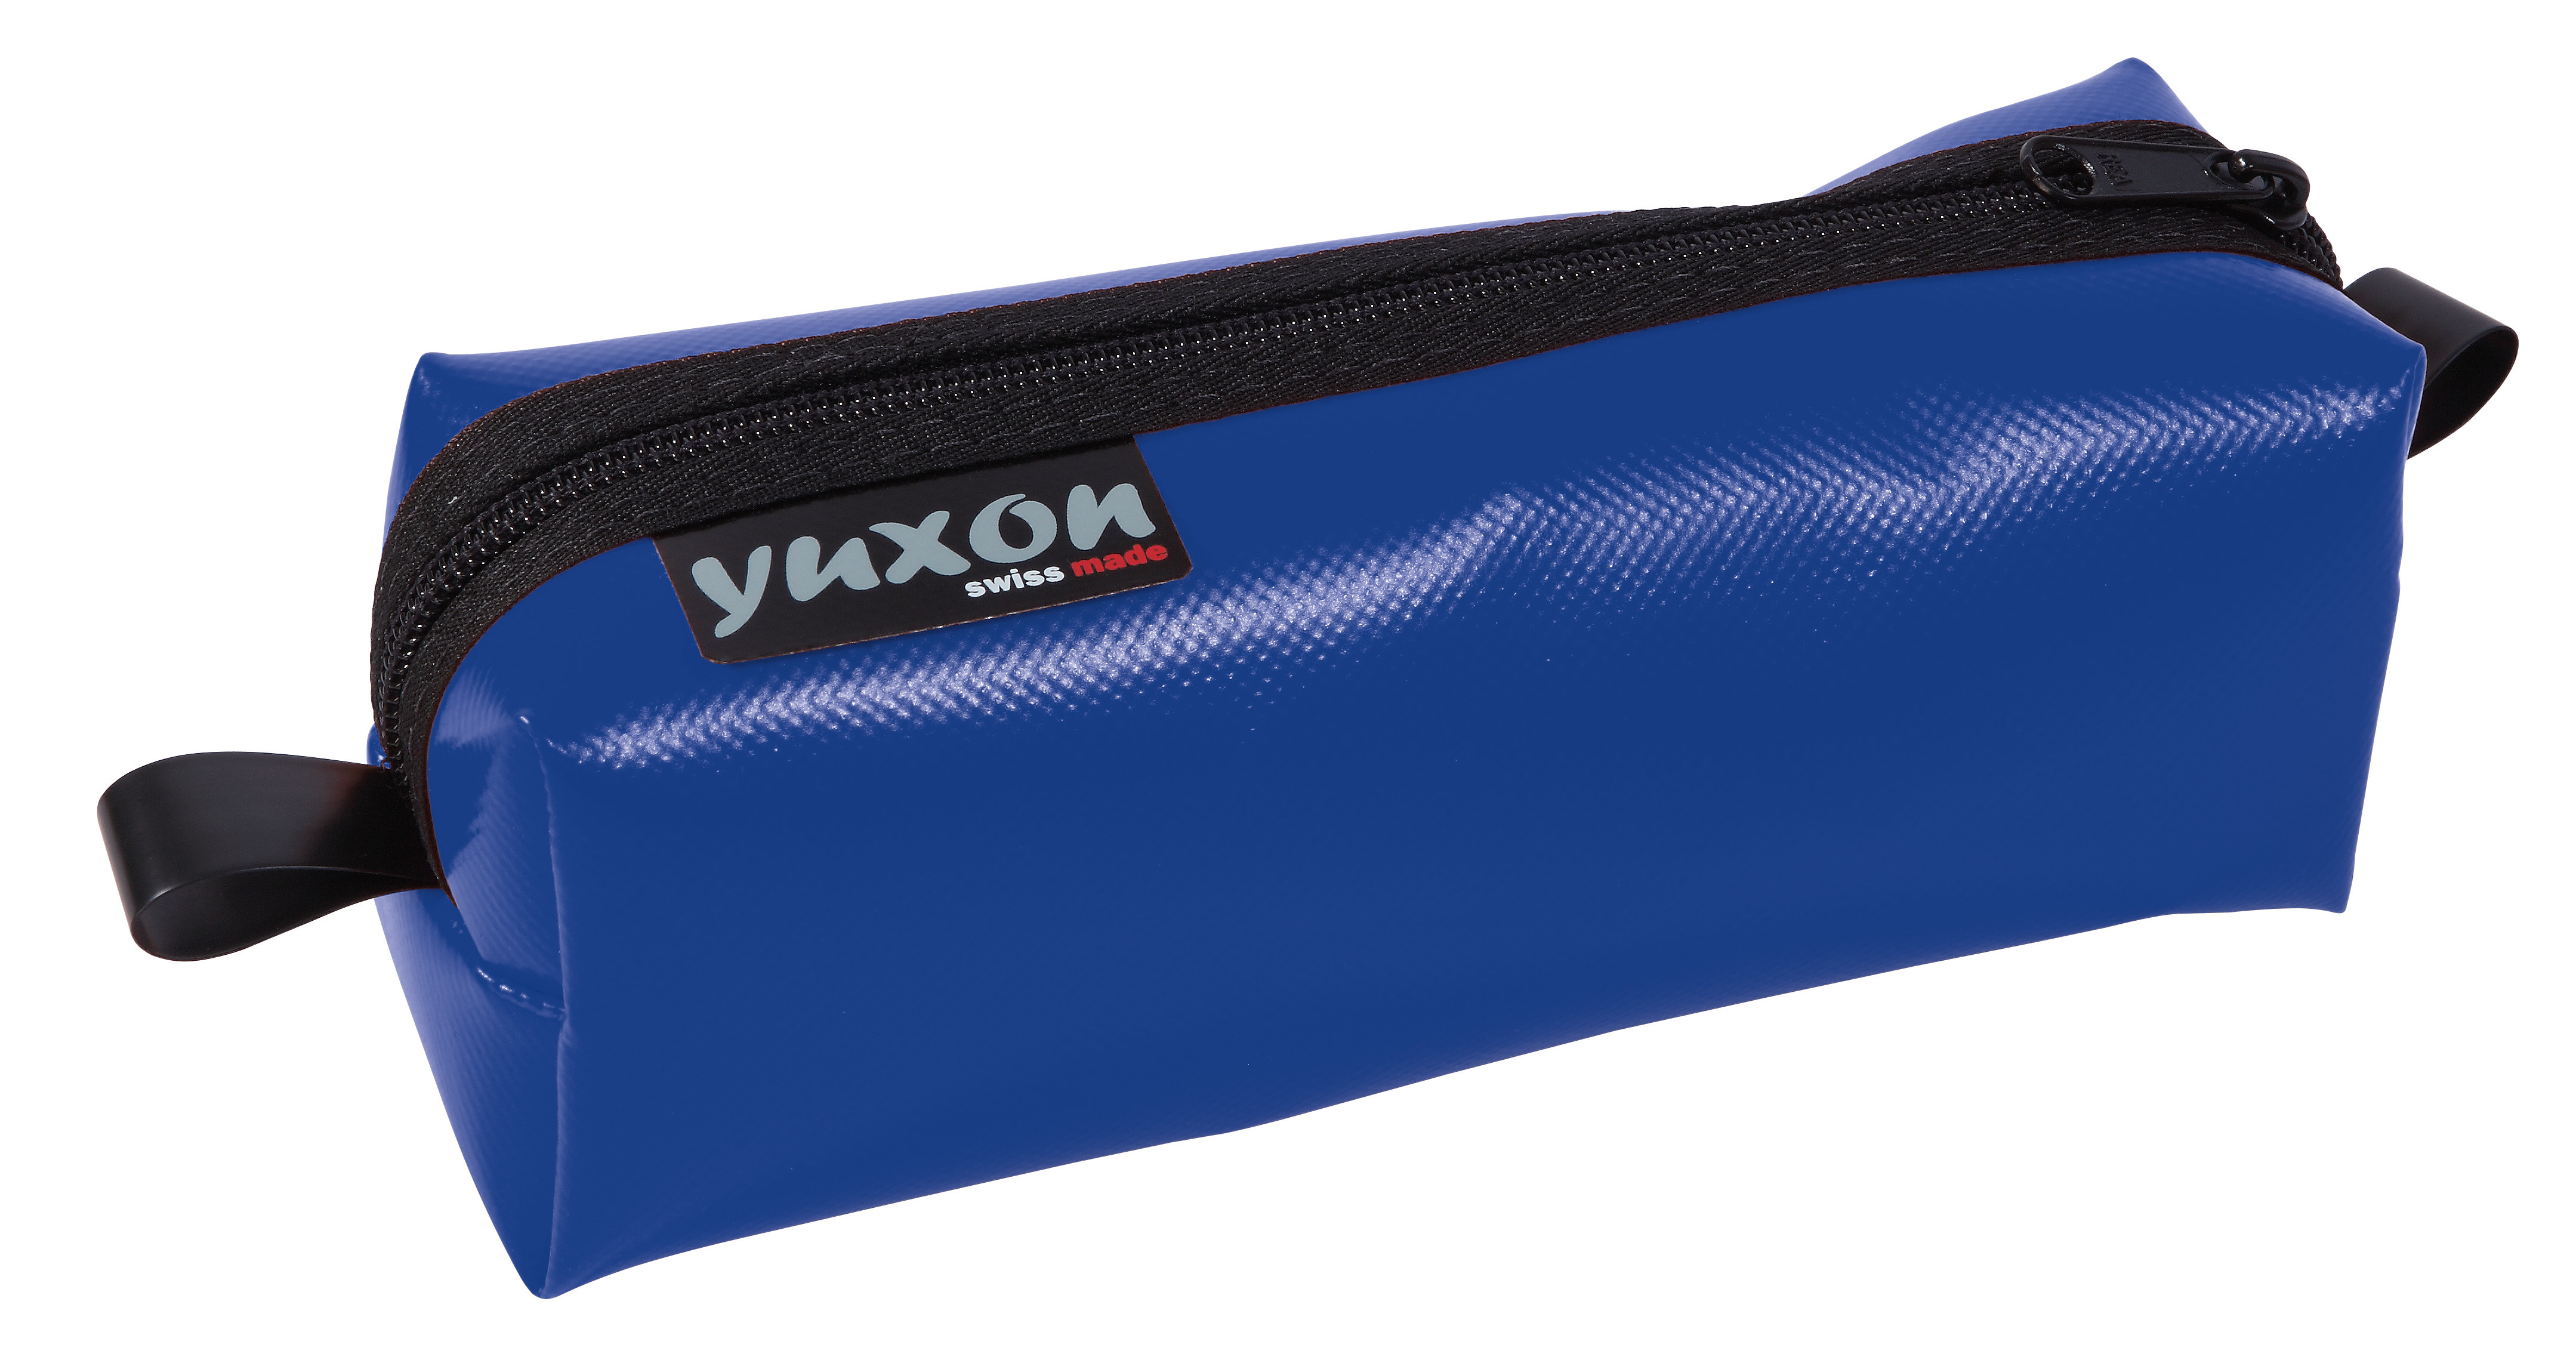 YUXON Trousse Maxi 8900.03 bleu 200x75x65mm